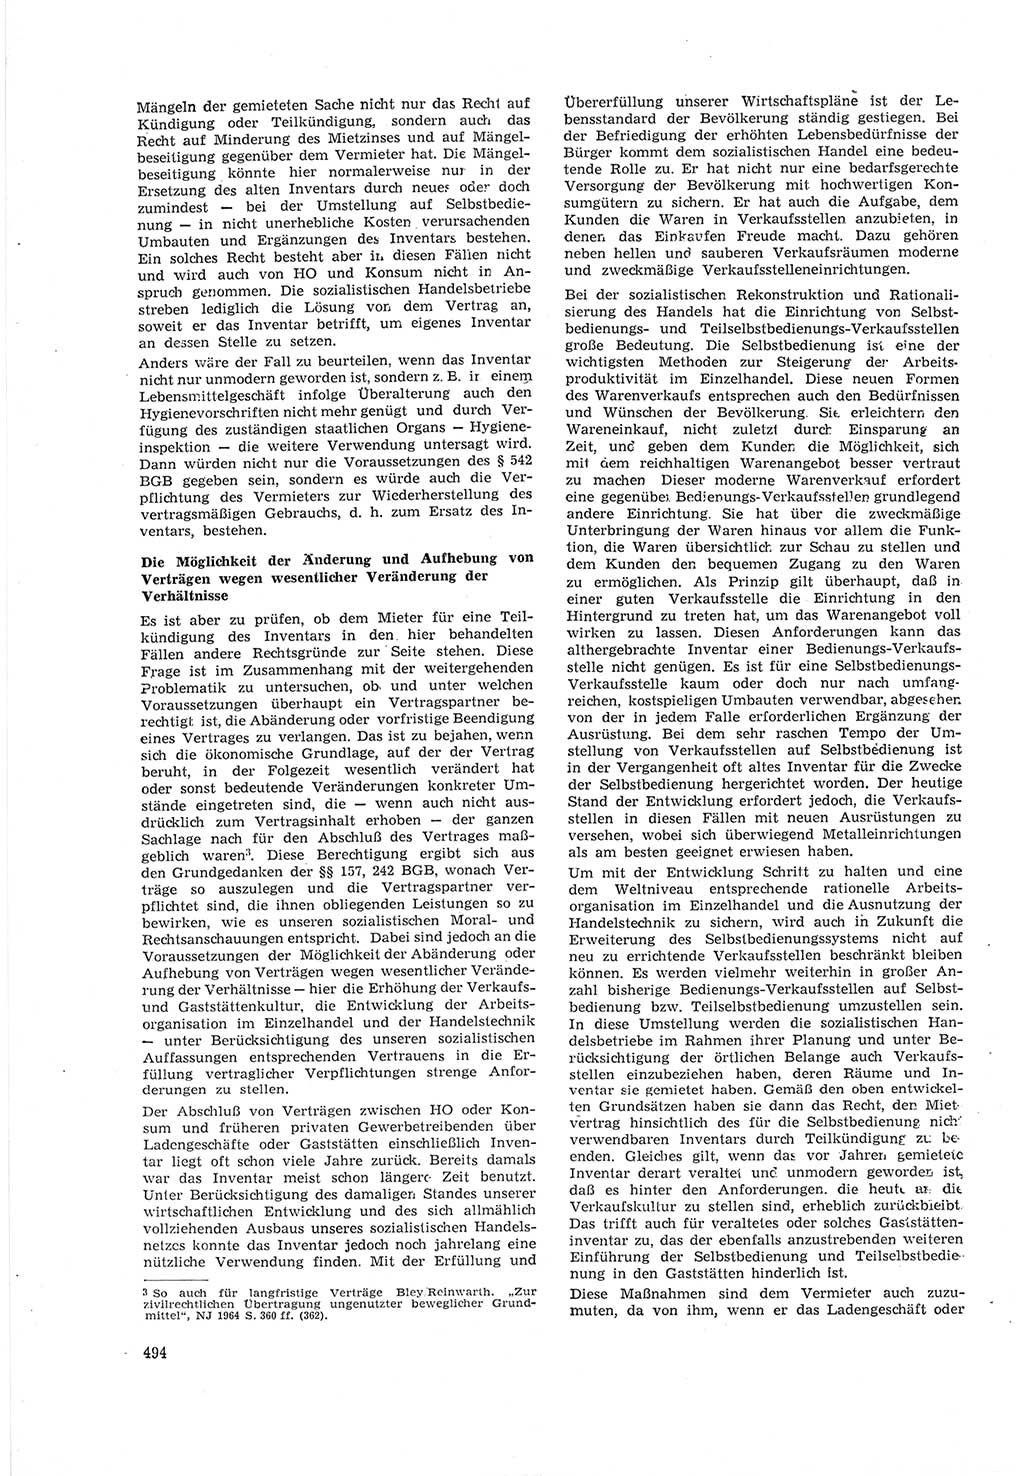 Neue Justiz (NJ), Zeitschrift für Recht und Rechtswissenschaft [Deutsche Demokratische Republik (DDR)], 18. Jahrgang 1964, Seite 494 (NJ DDR 1964, S. 494)